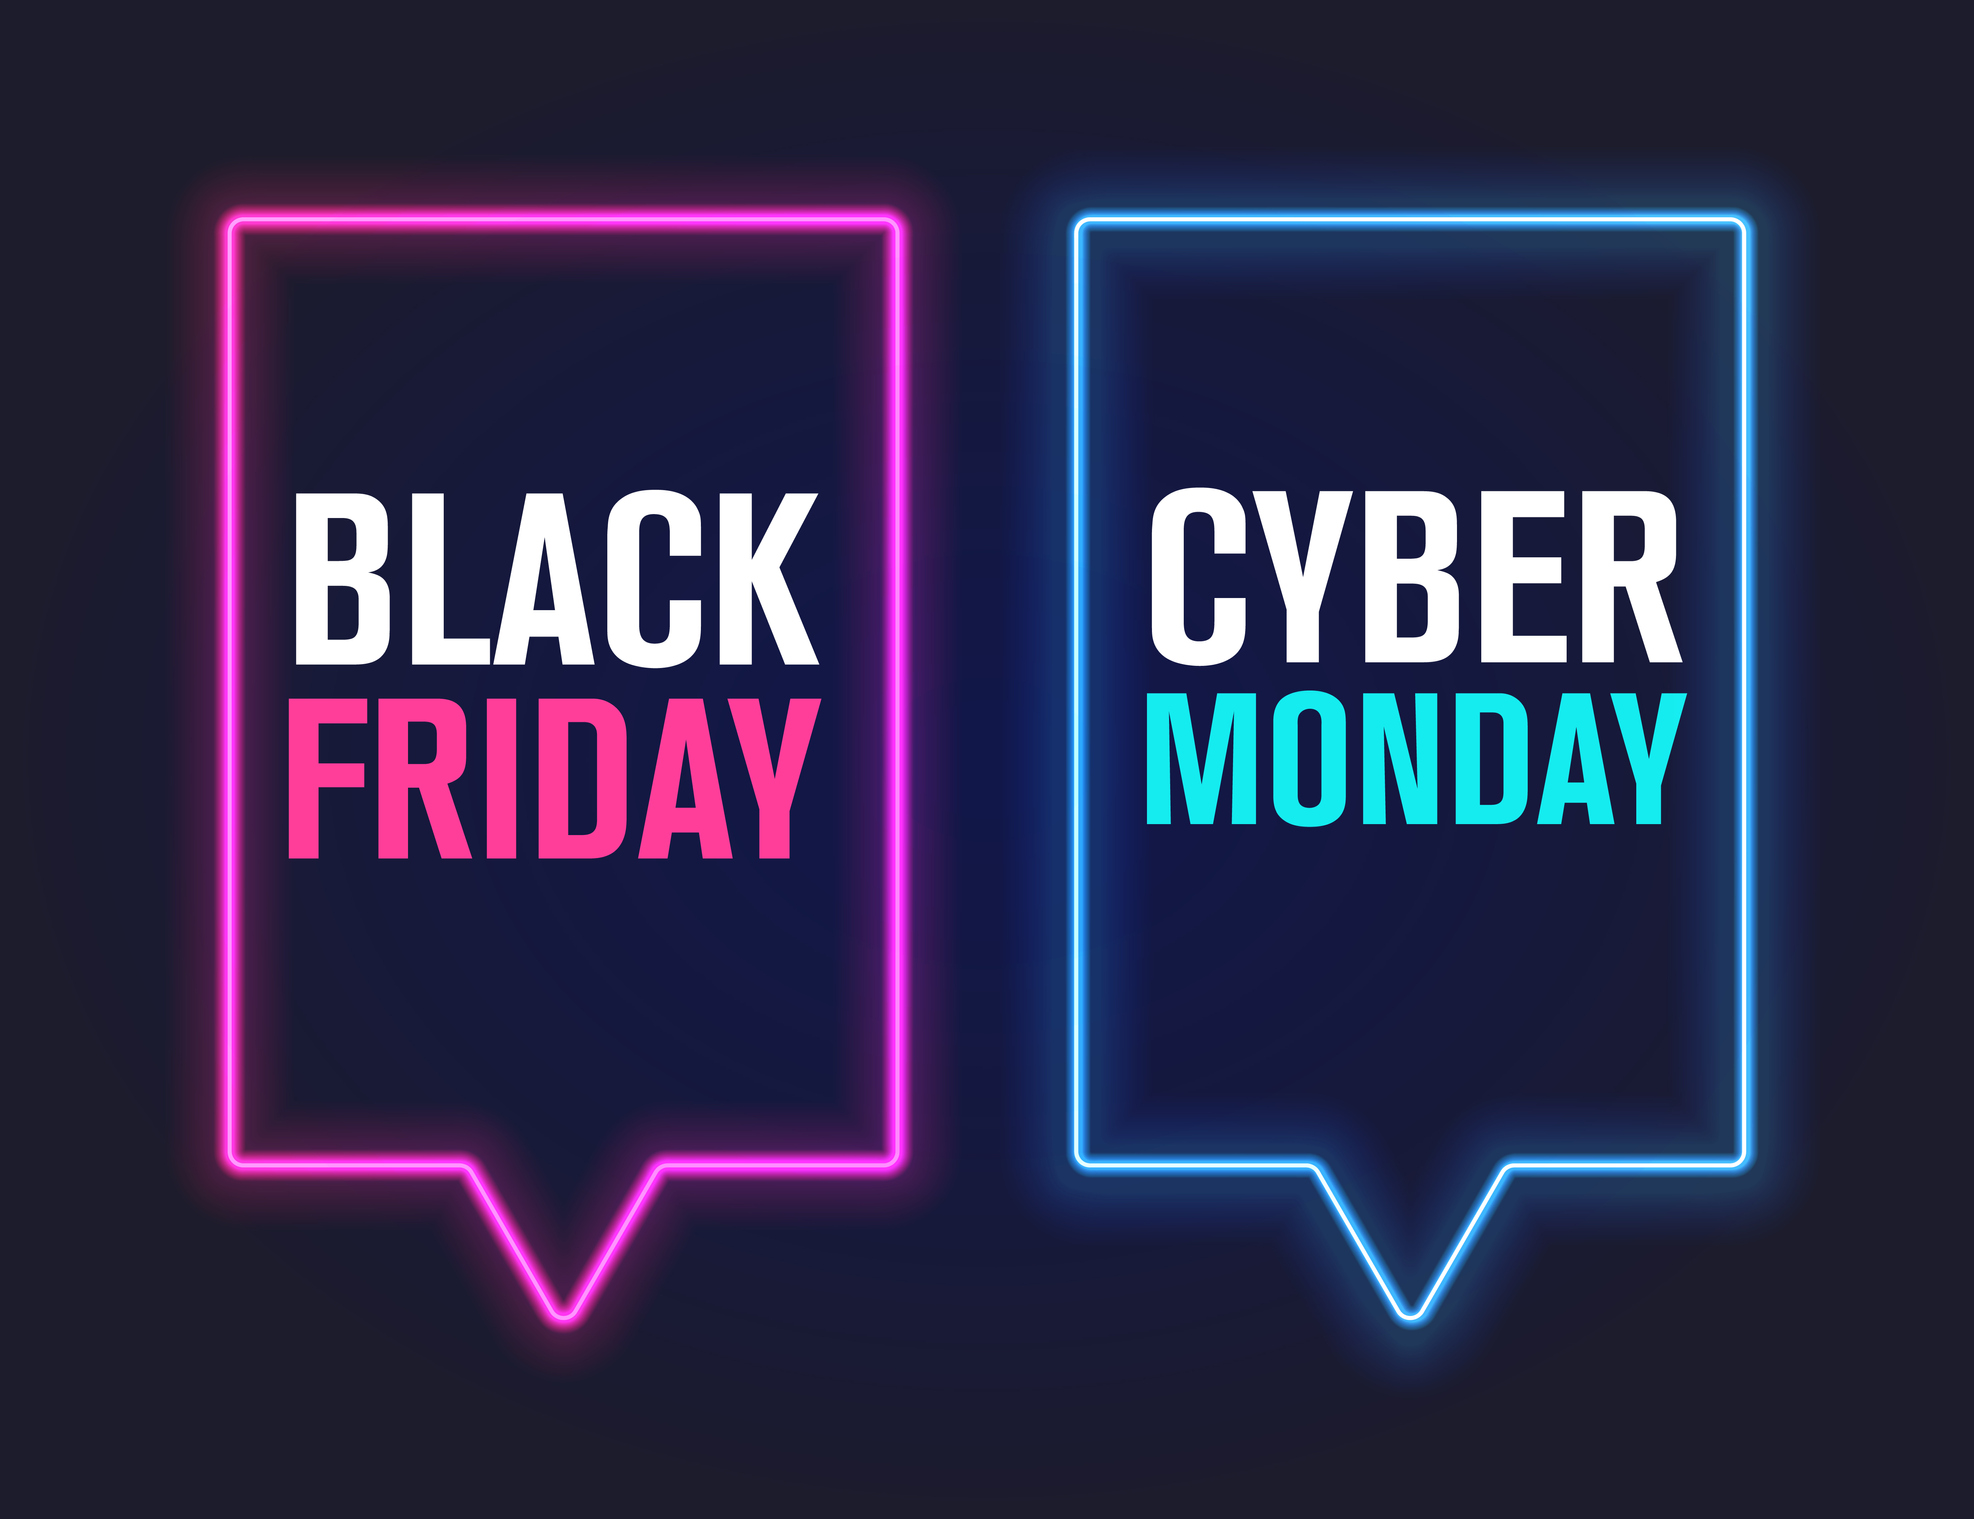 Amazon Prime Day superan las del Black Friday y Cyber Monday, supera las de 2016 en un 60%